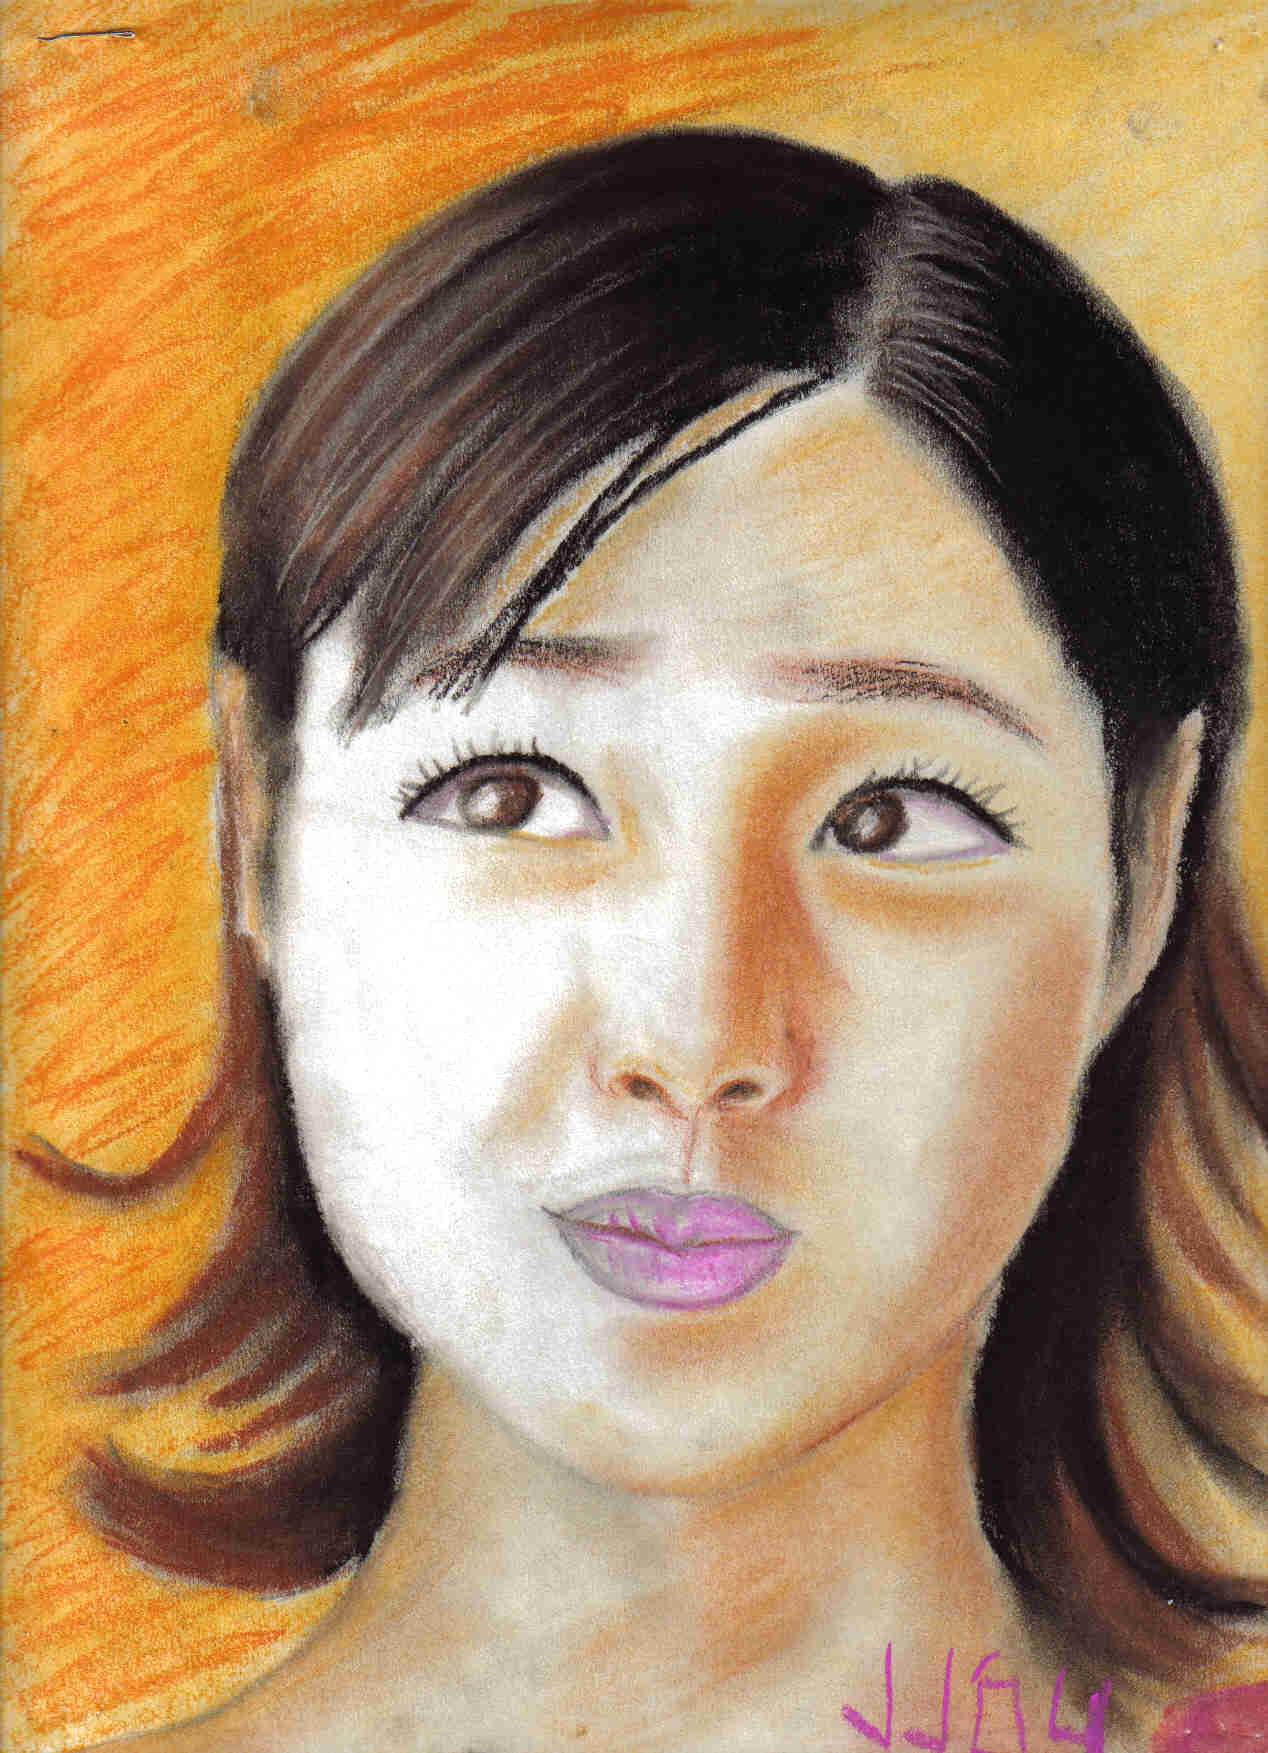 Orange girl by soju